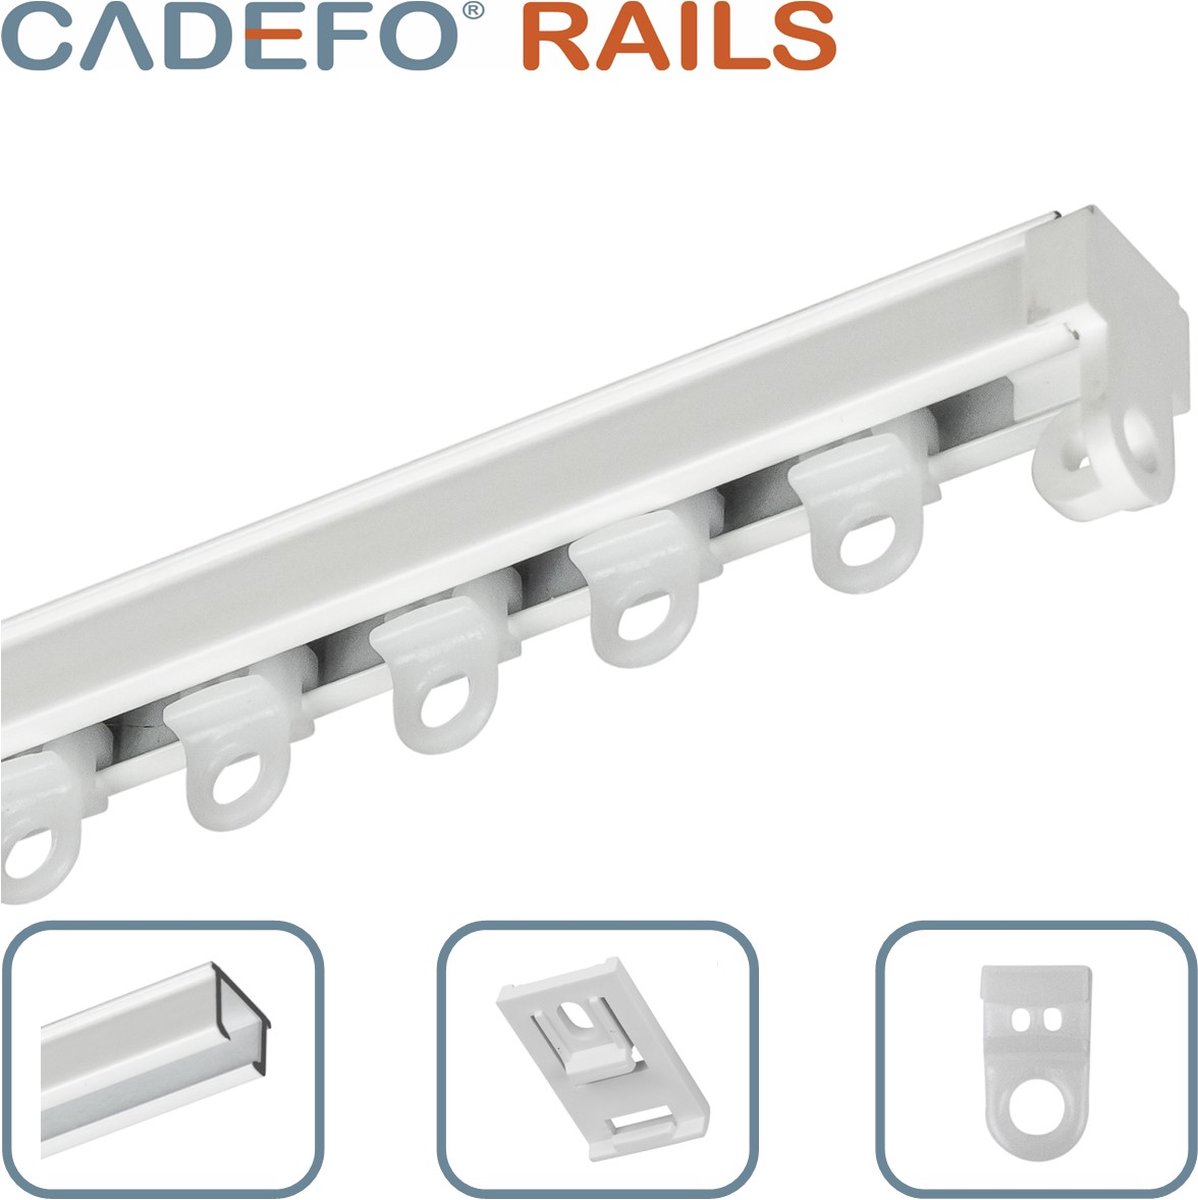 CADEFO RAILS (101 - 150 cm) Gordijnrails - Compleet op maat! - UIT 1 STUK - Leverbaar tot 6 meter - Plafondbevestiging - Lengte 130 cm